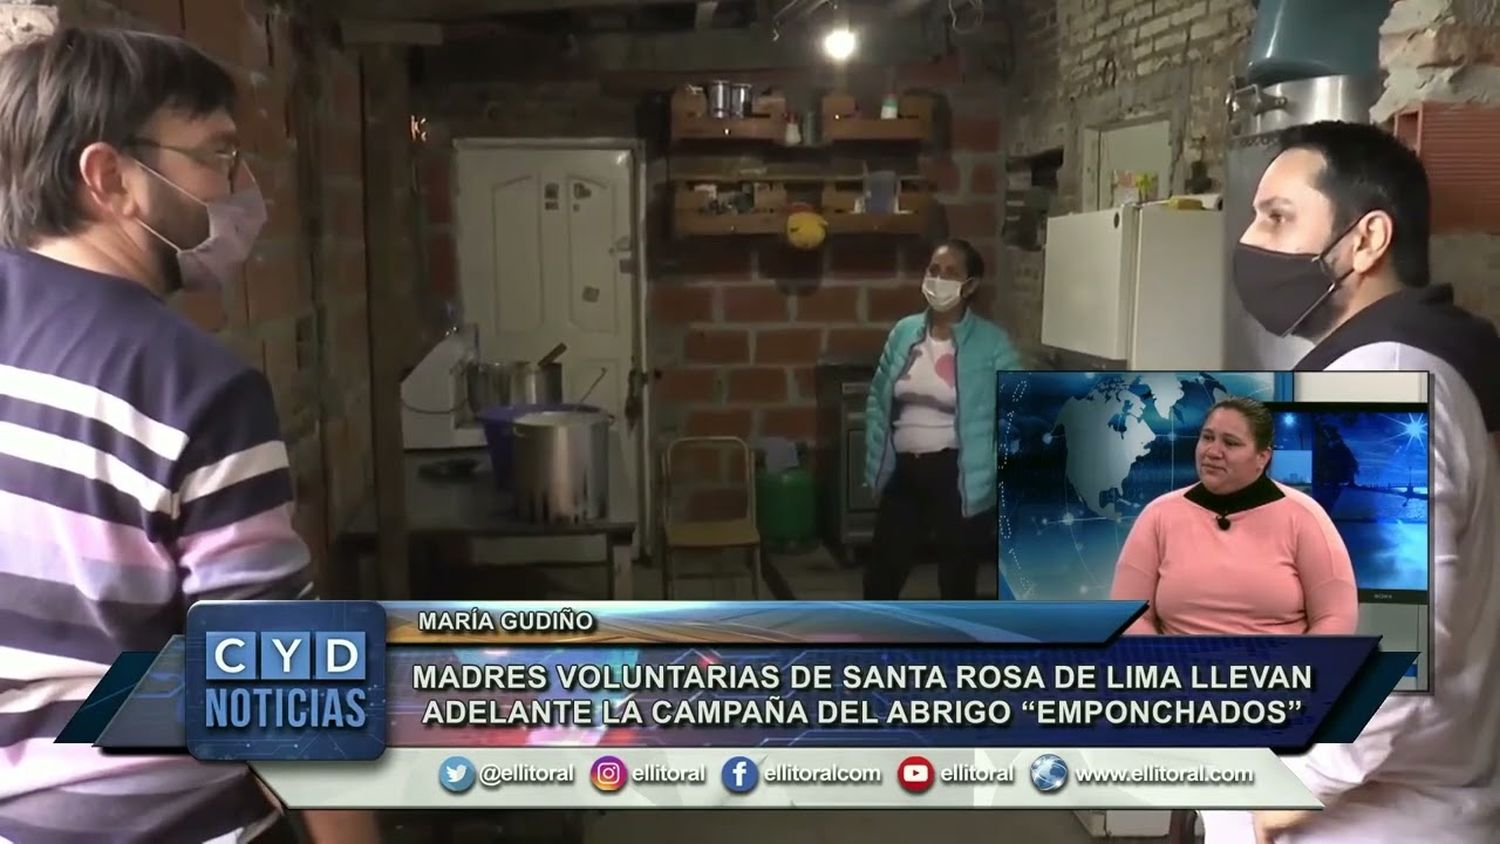 Madres voluntarias de Santa Rosa de Lima llevan adelante la campaña del abrigo